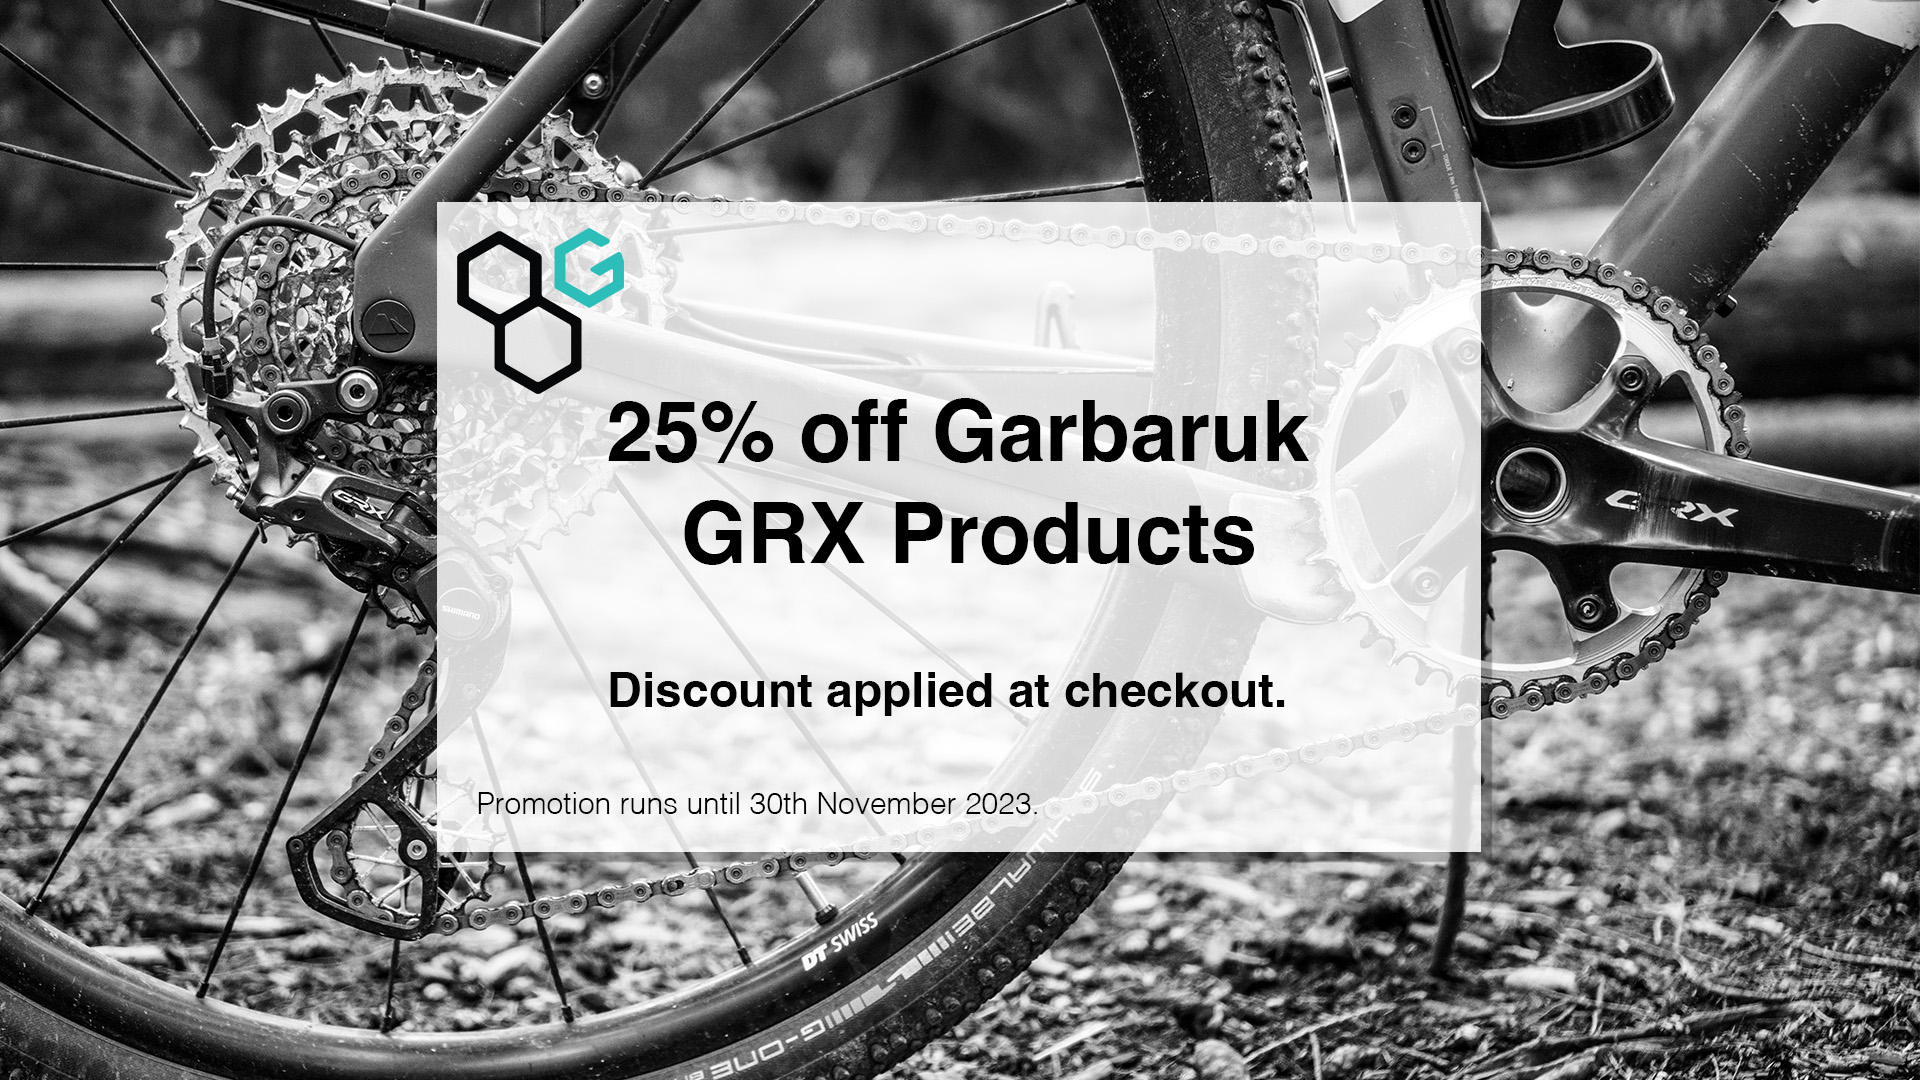 15% off Gabaruk